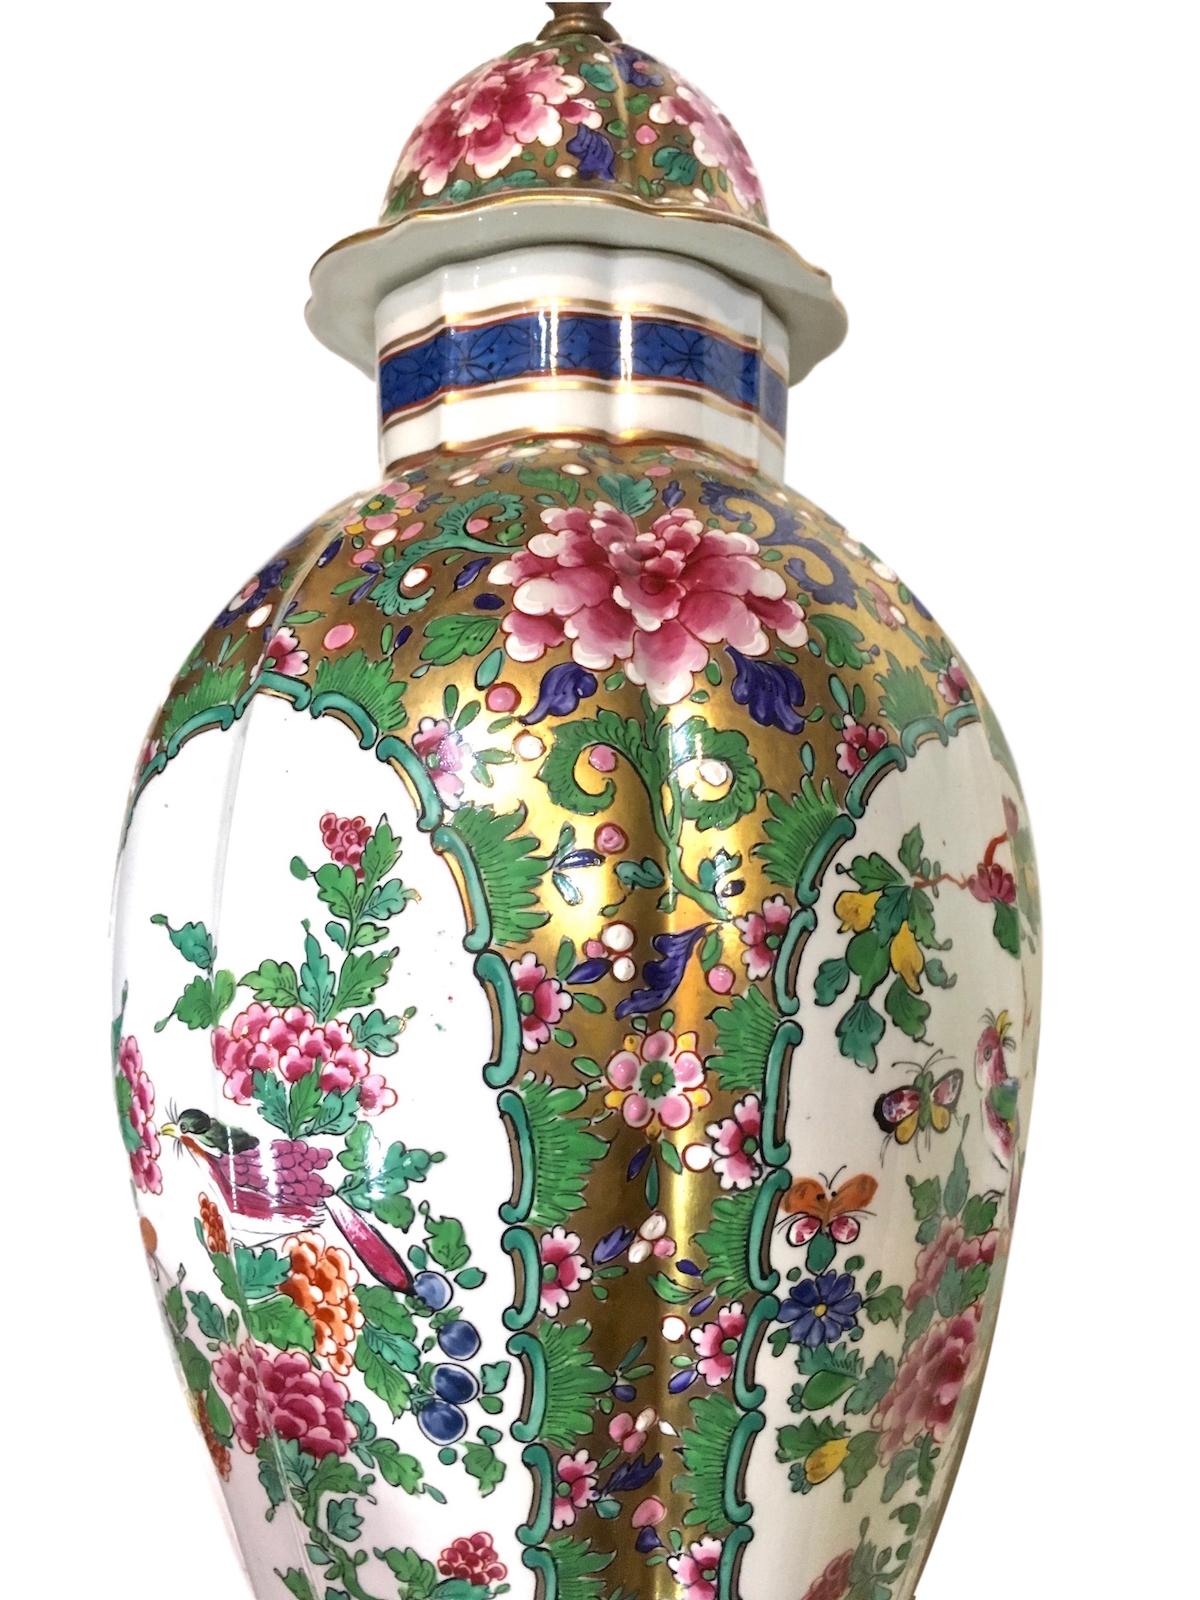 Lampe de table unique en porcelaine chinoise datant des années 1940, avec décoration dorée et florale.

Mesures :
Hauteur du corps : 22
Point le plus large : 7,5